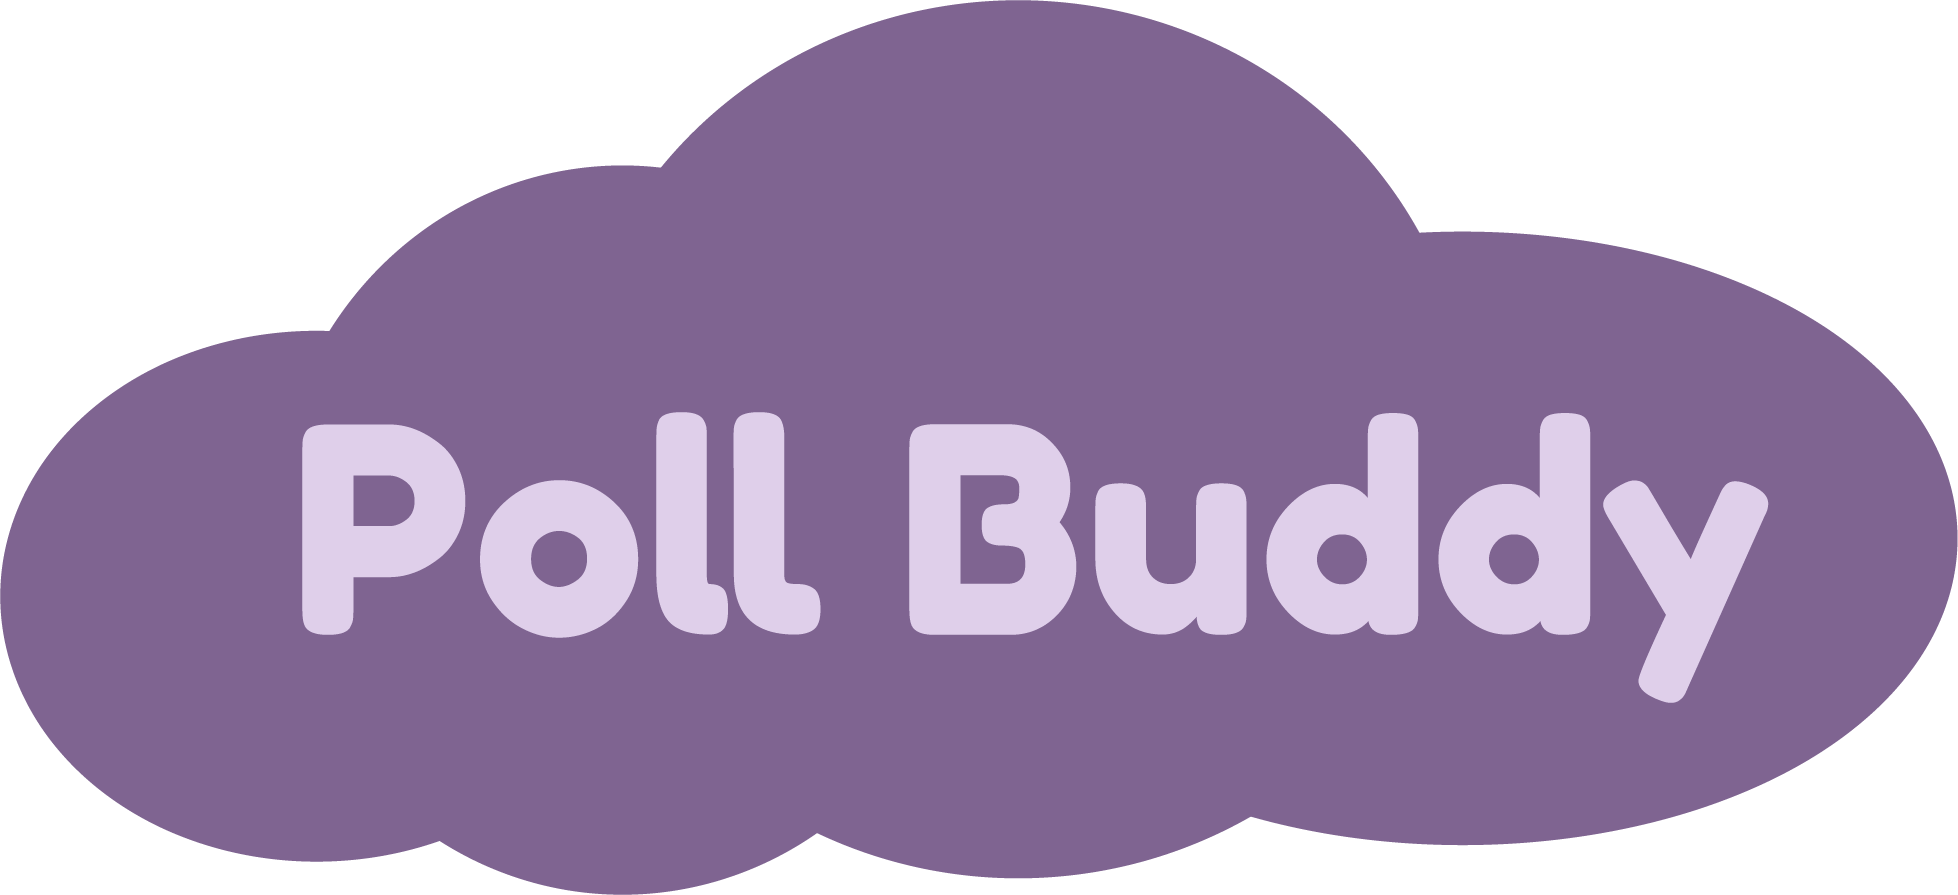 Poll Buddy logo